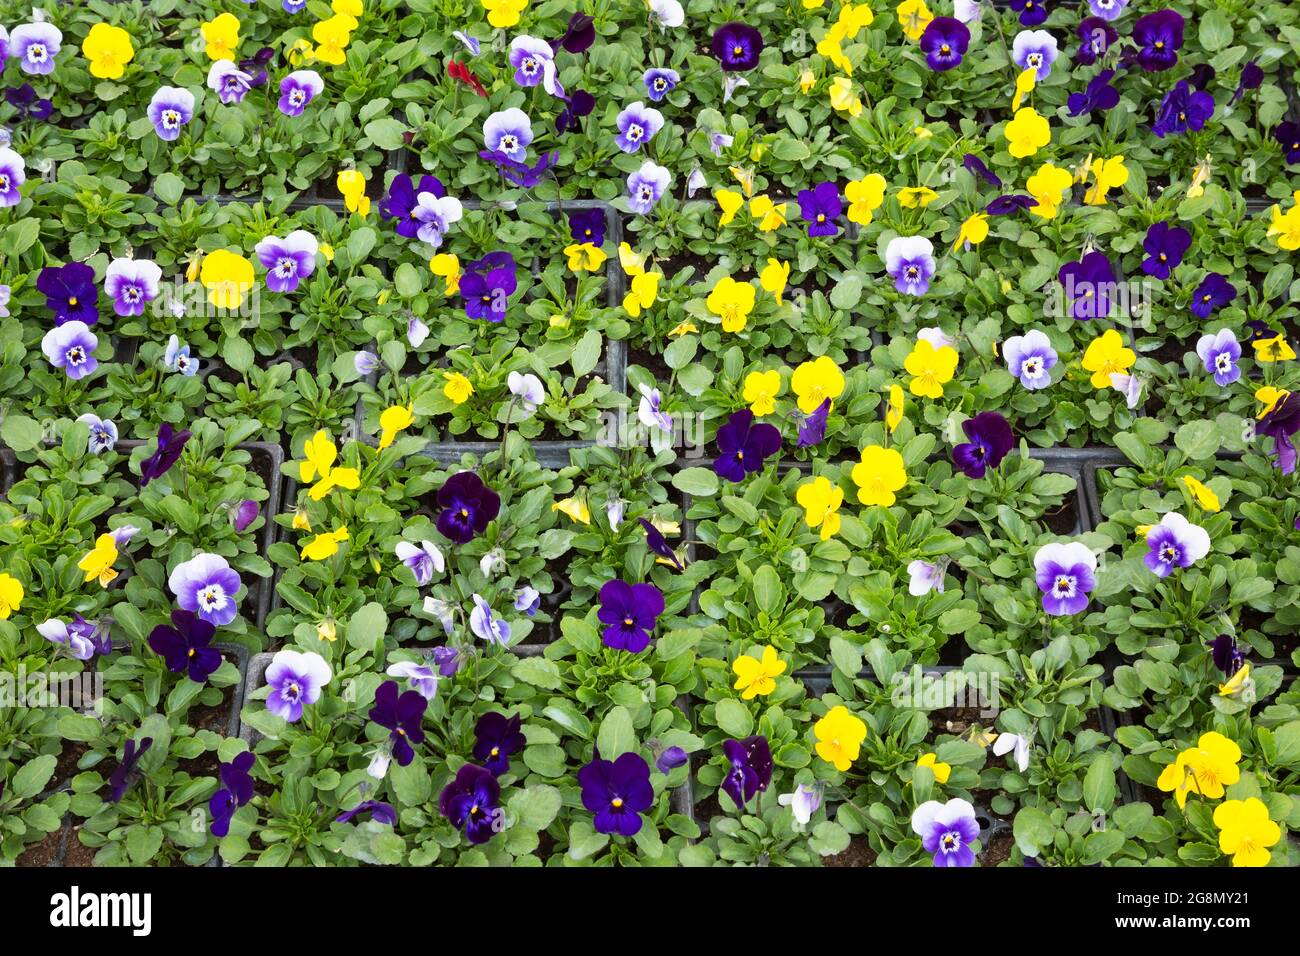 Jaune, bleu et violet Viola - Violet fleurs croissant dans des contenants chez un cultivateur de fleurs Banque D'Images